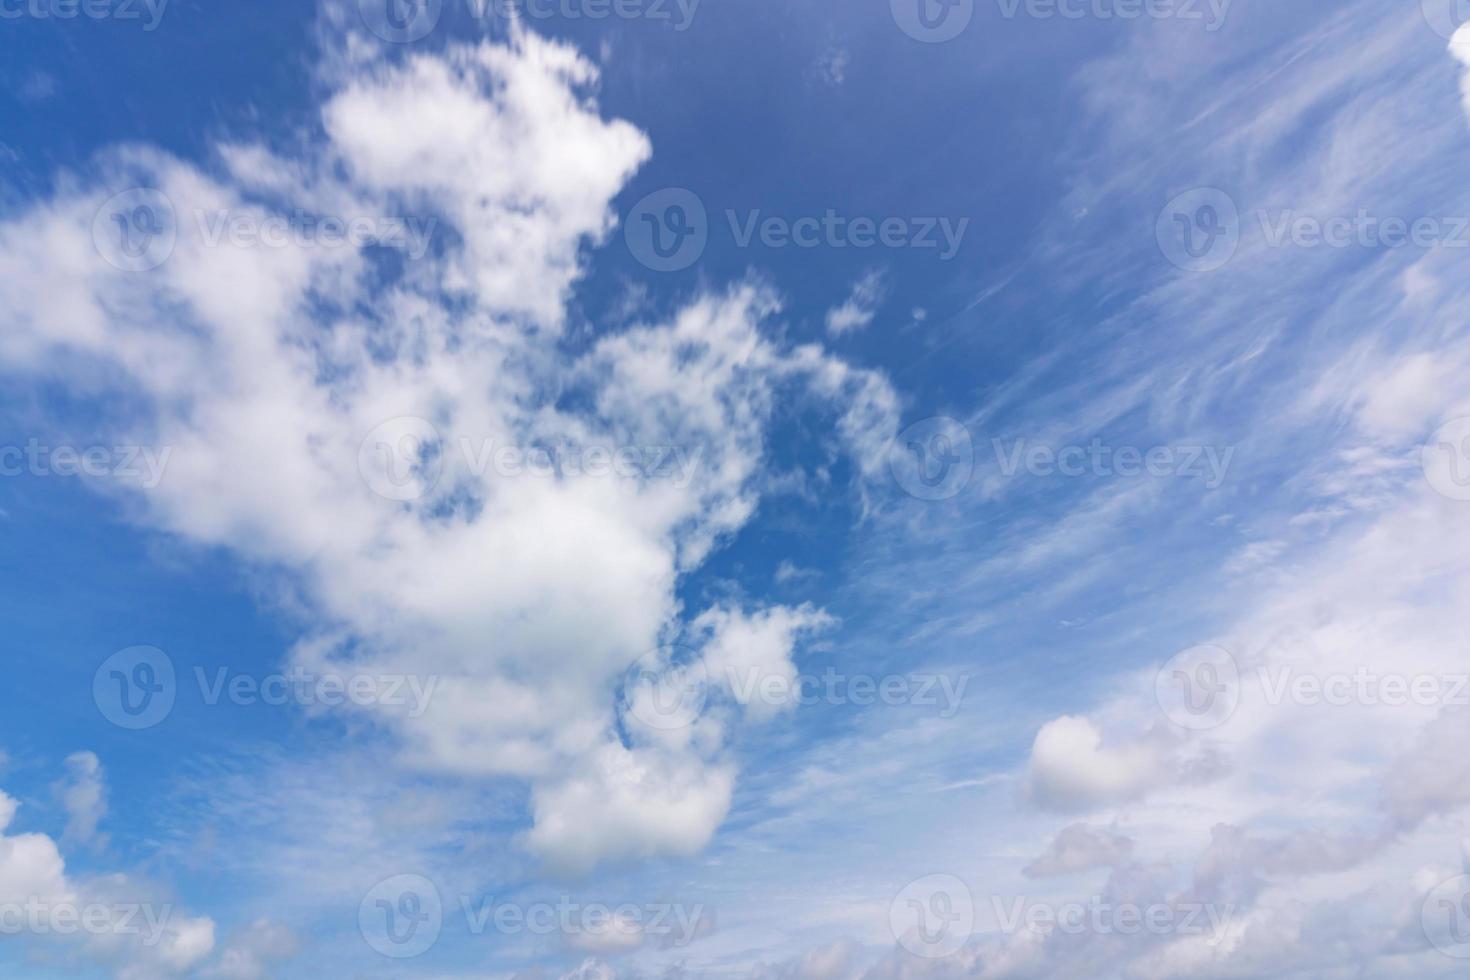 cielo azzurro e nuvole bianche foto